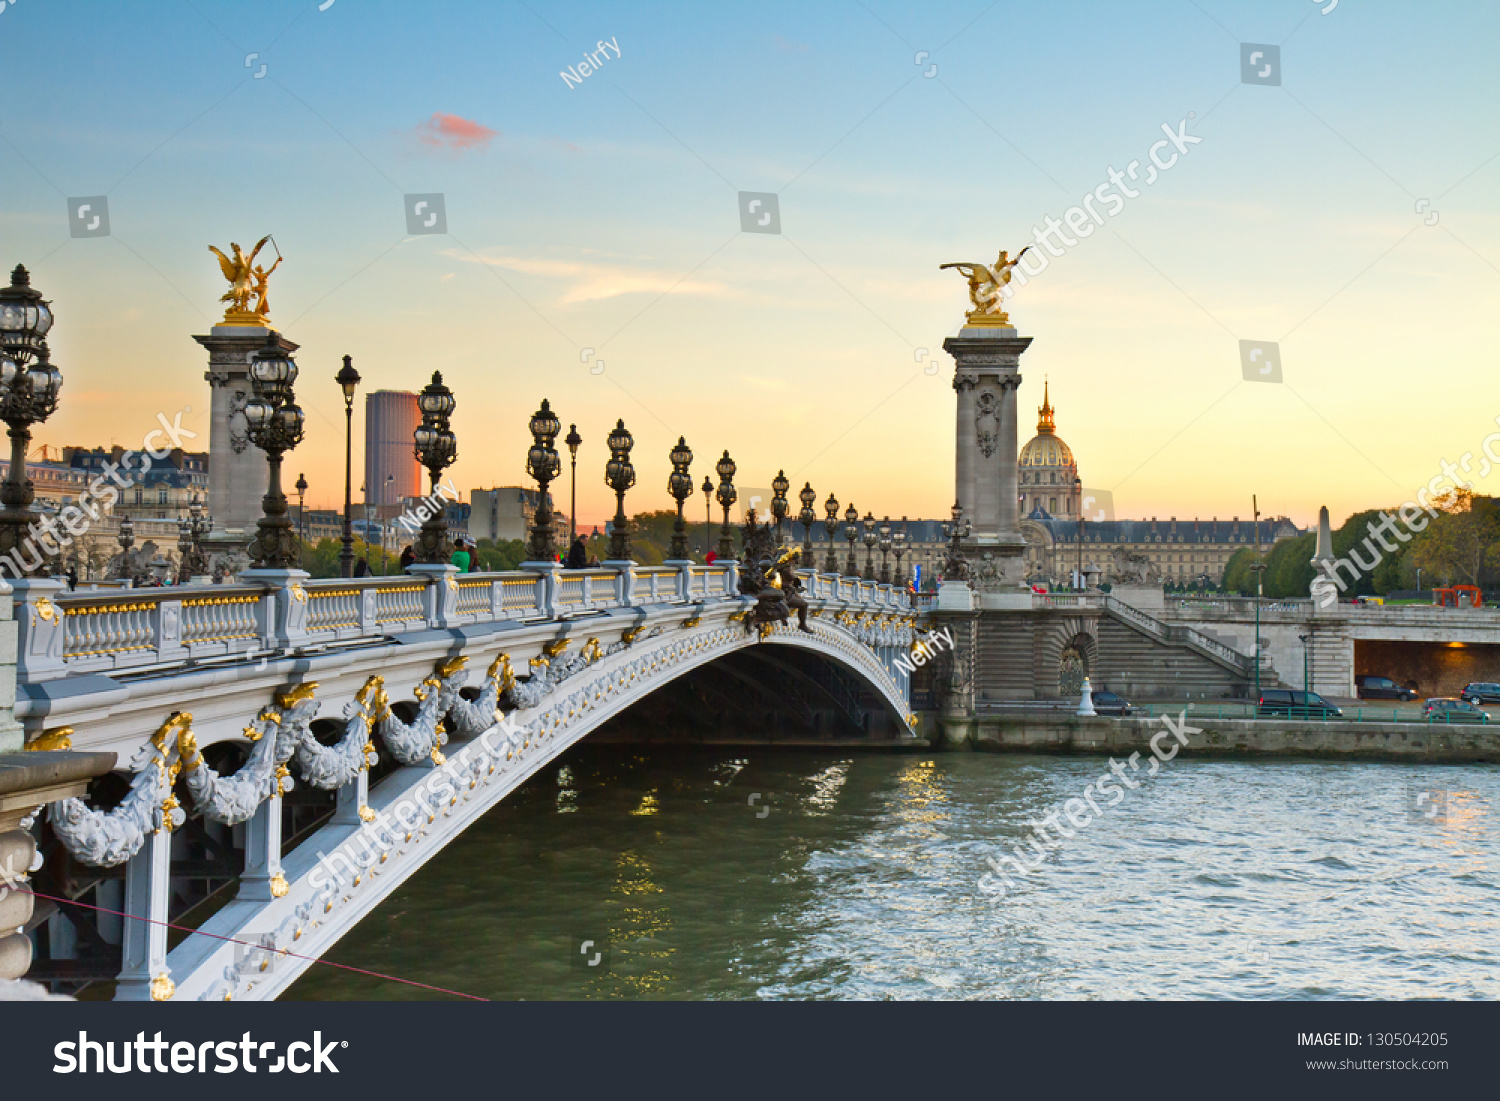 _alexander_iii_paris_bridge Images, Stock Photos & Vectors | Shutterstock